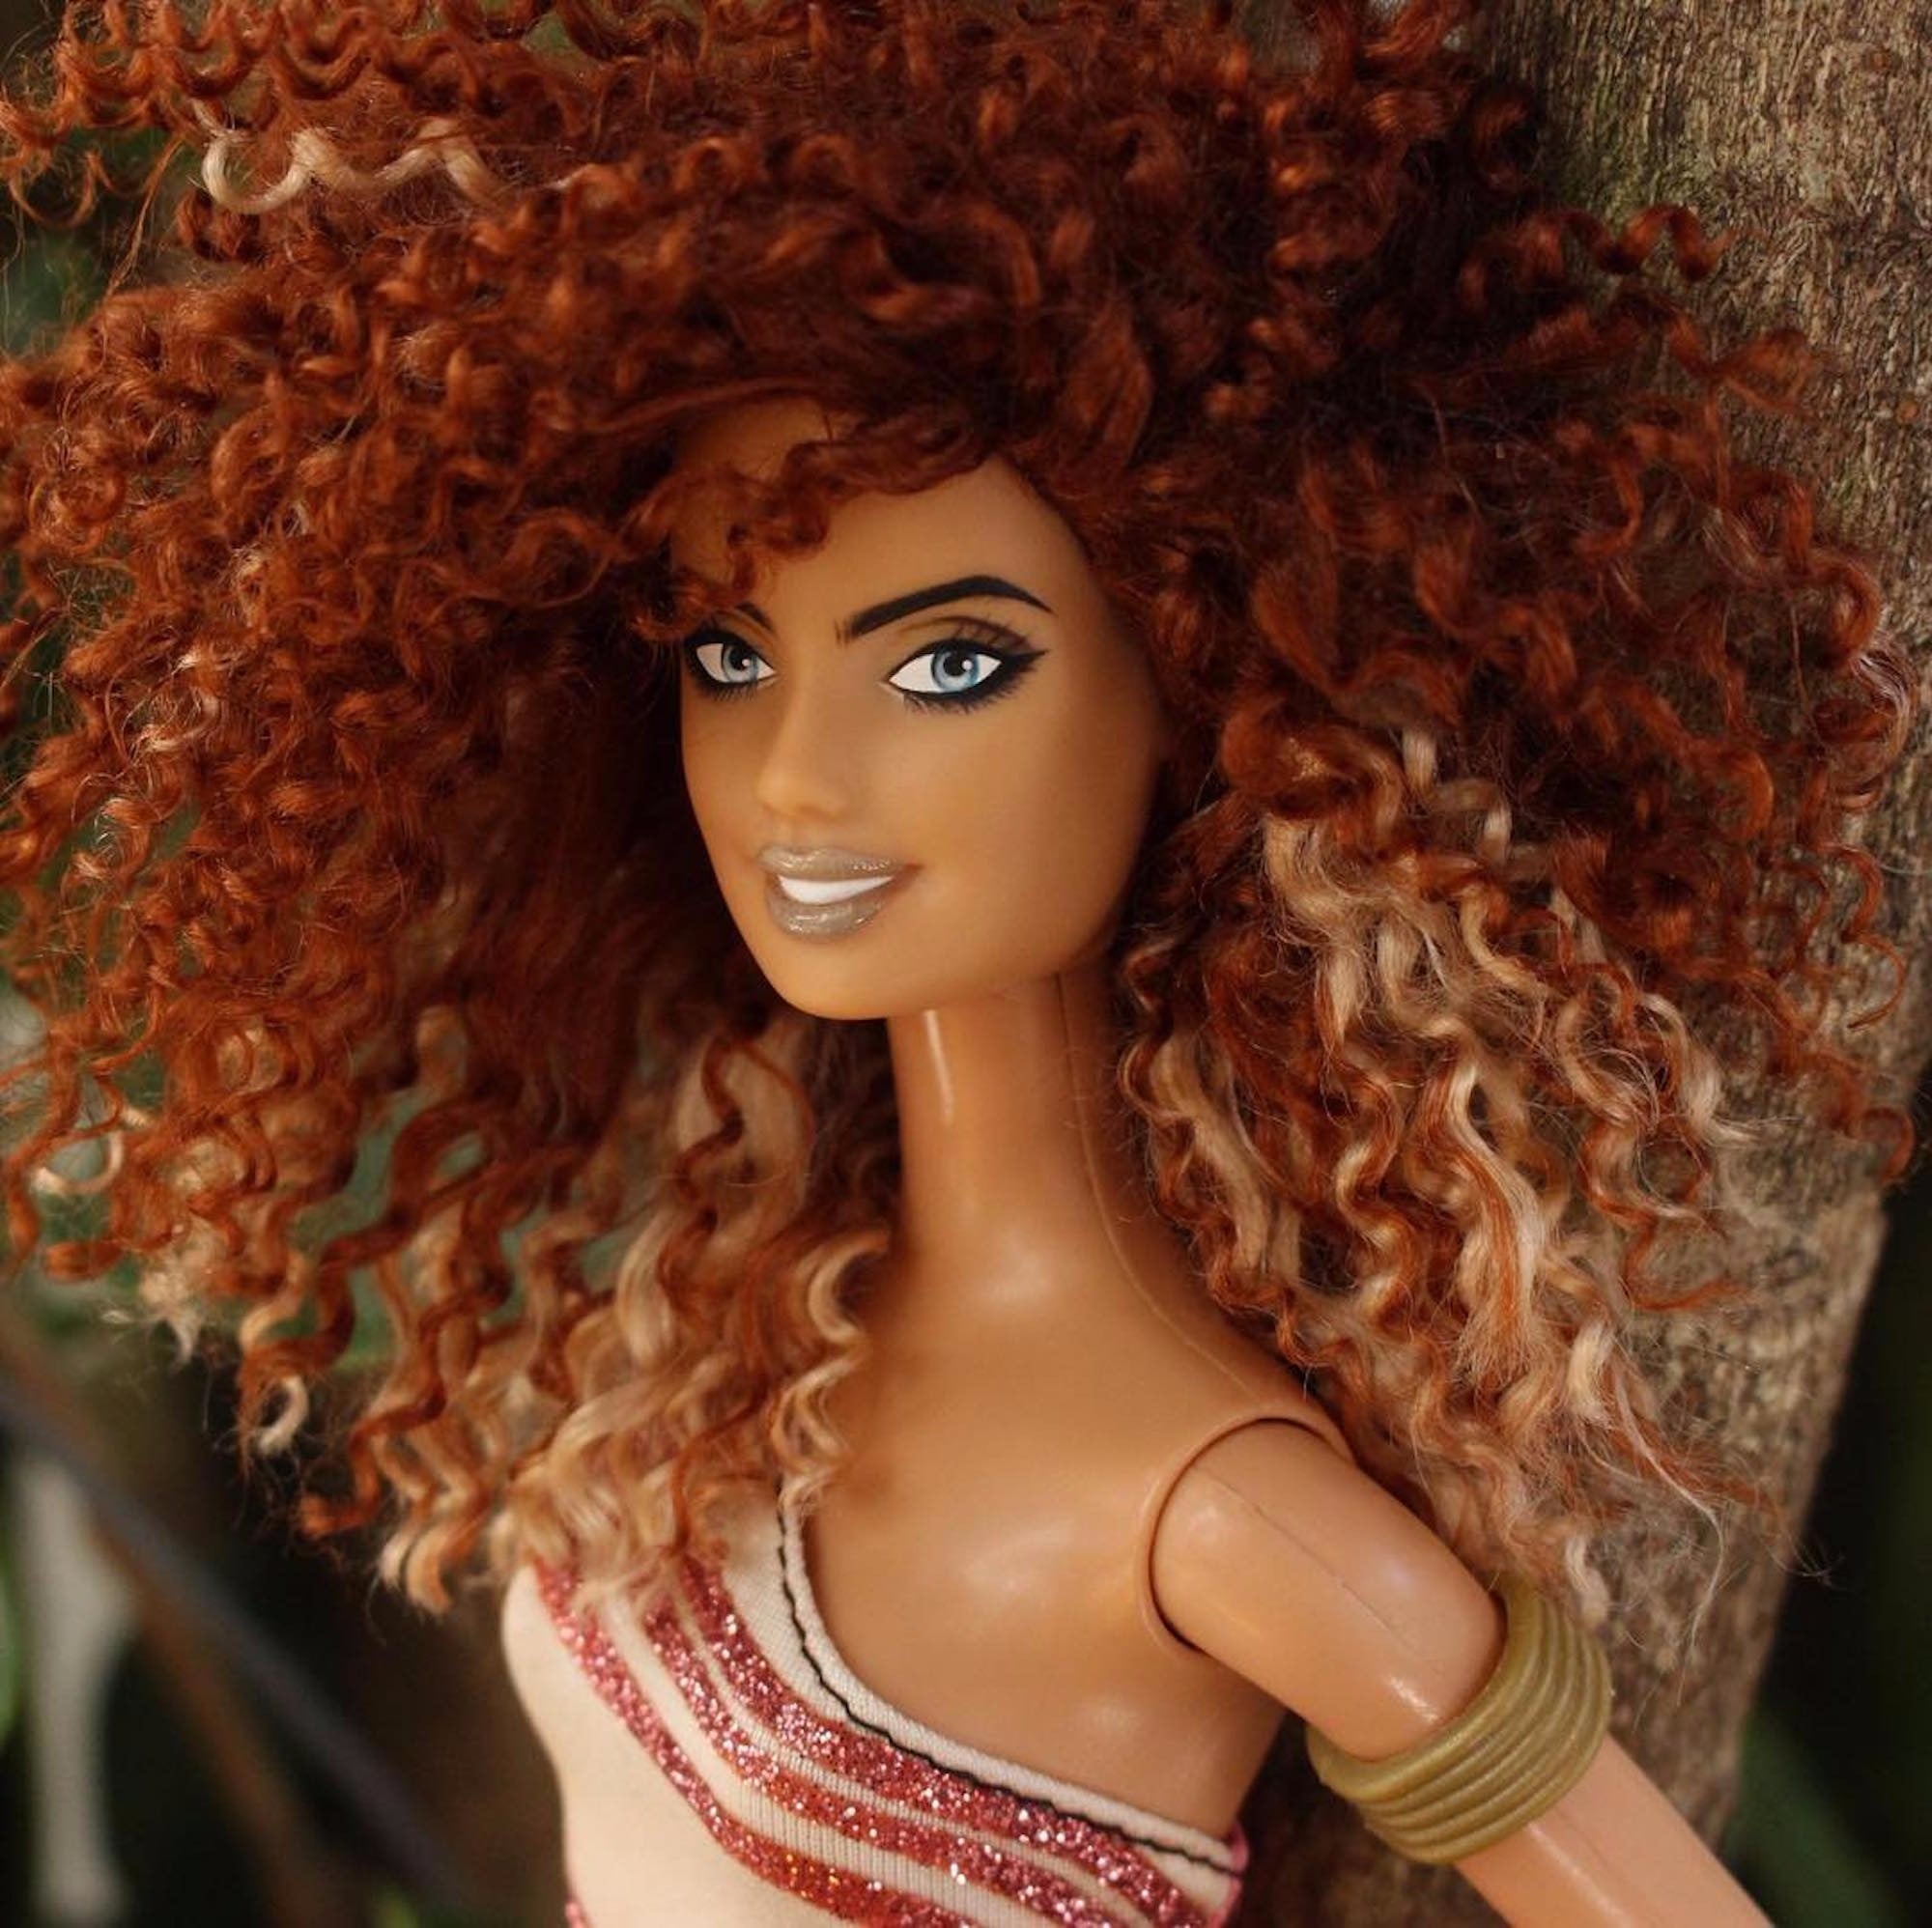 Customized Barbie Dolls | POPSUGAR Beauty